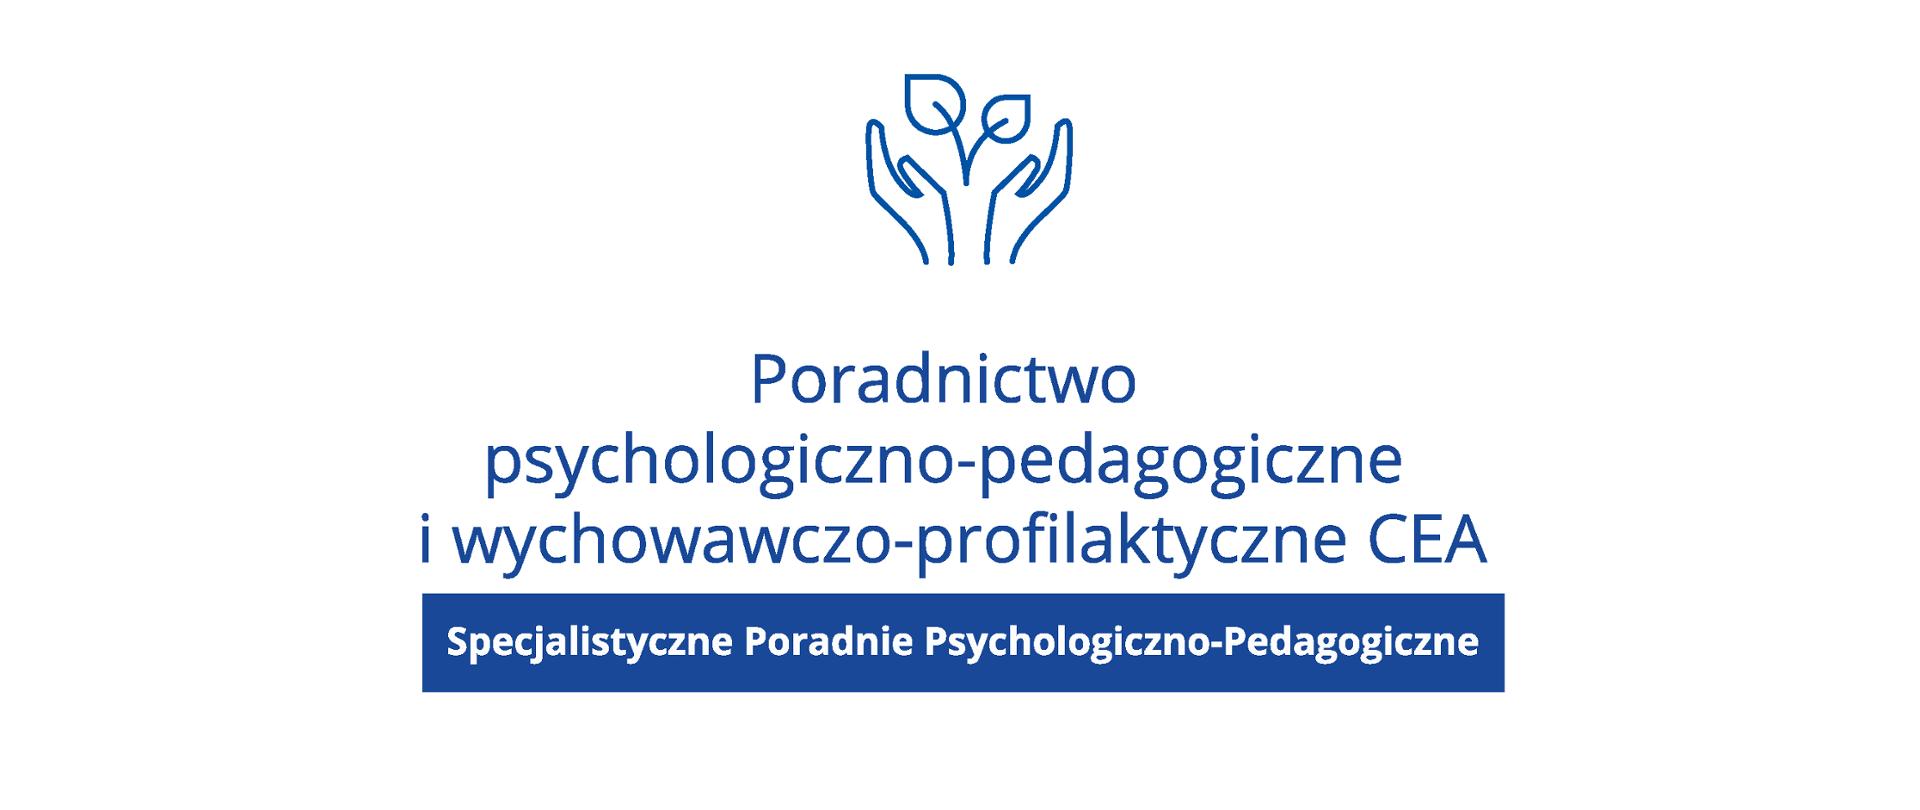 Poradnictwo psychologiczno-pedagogiczne i wychowawczo-profilaktyczne CEA. Specjalistyczne Poradnie Psychologiczno-Pedagogiczne